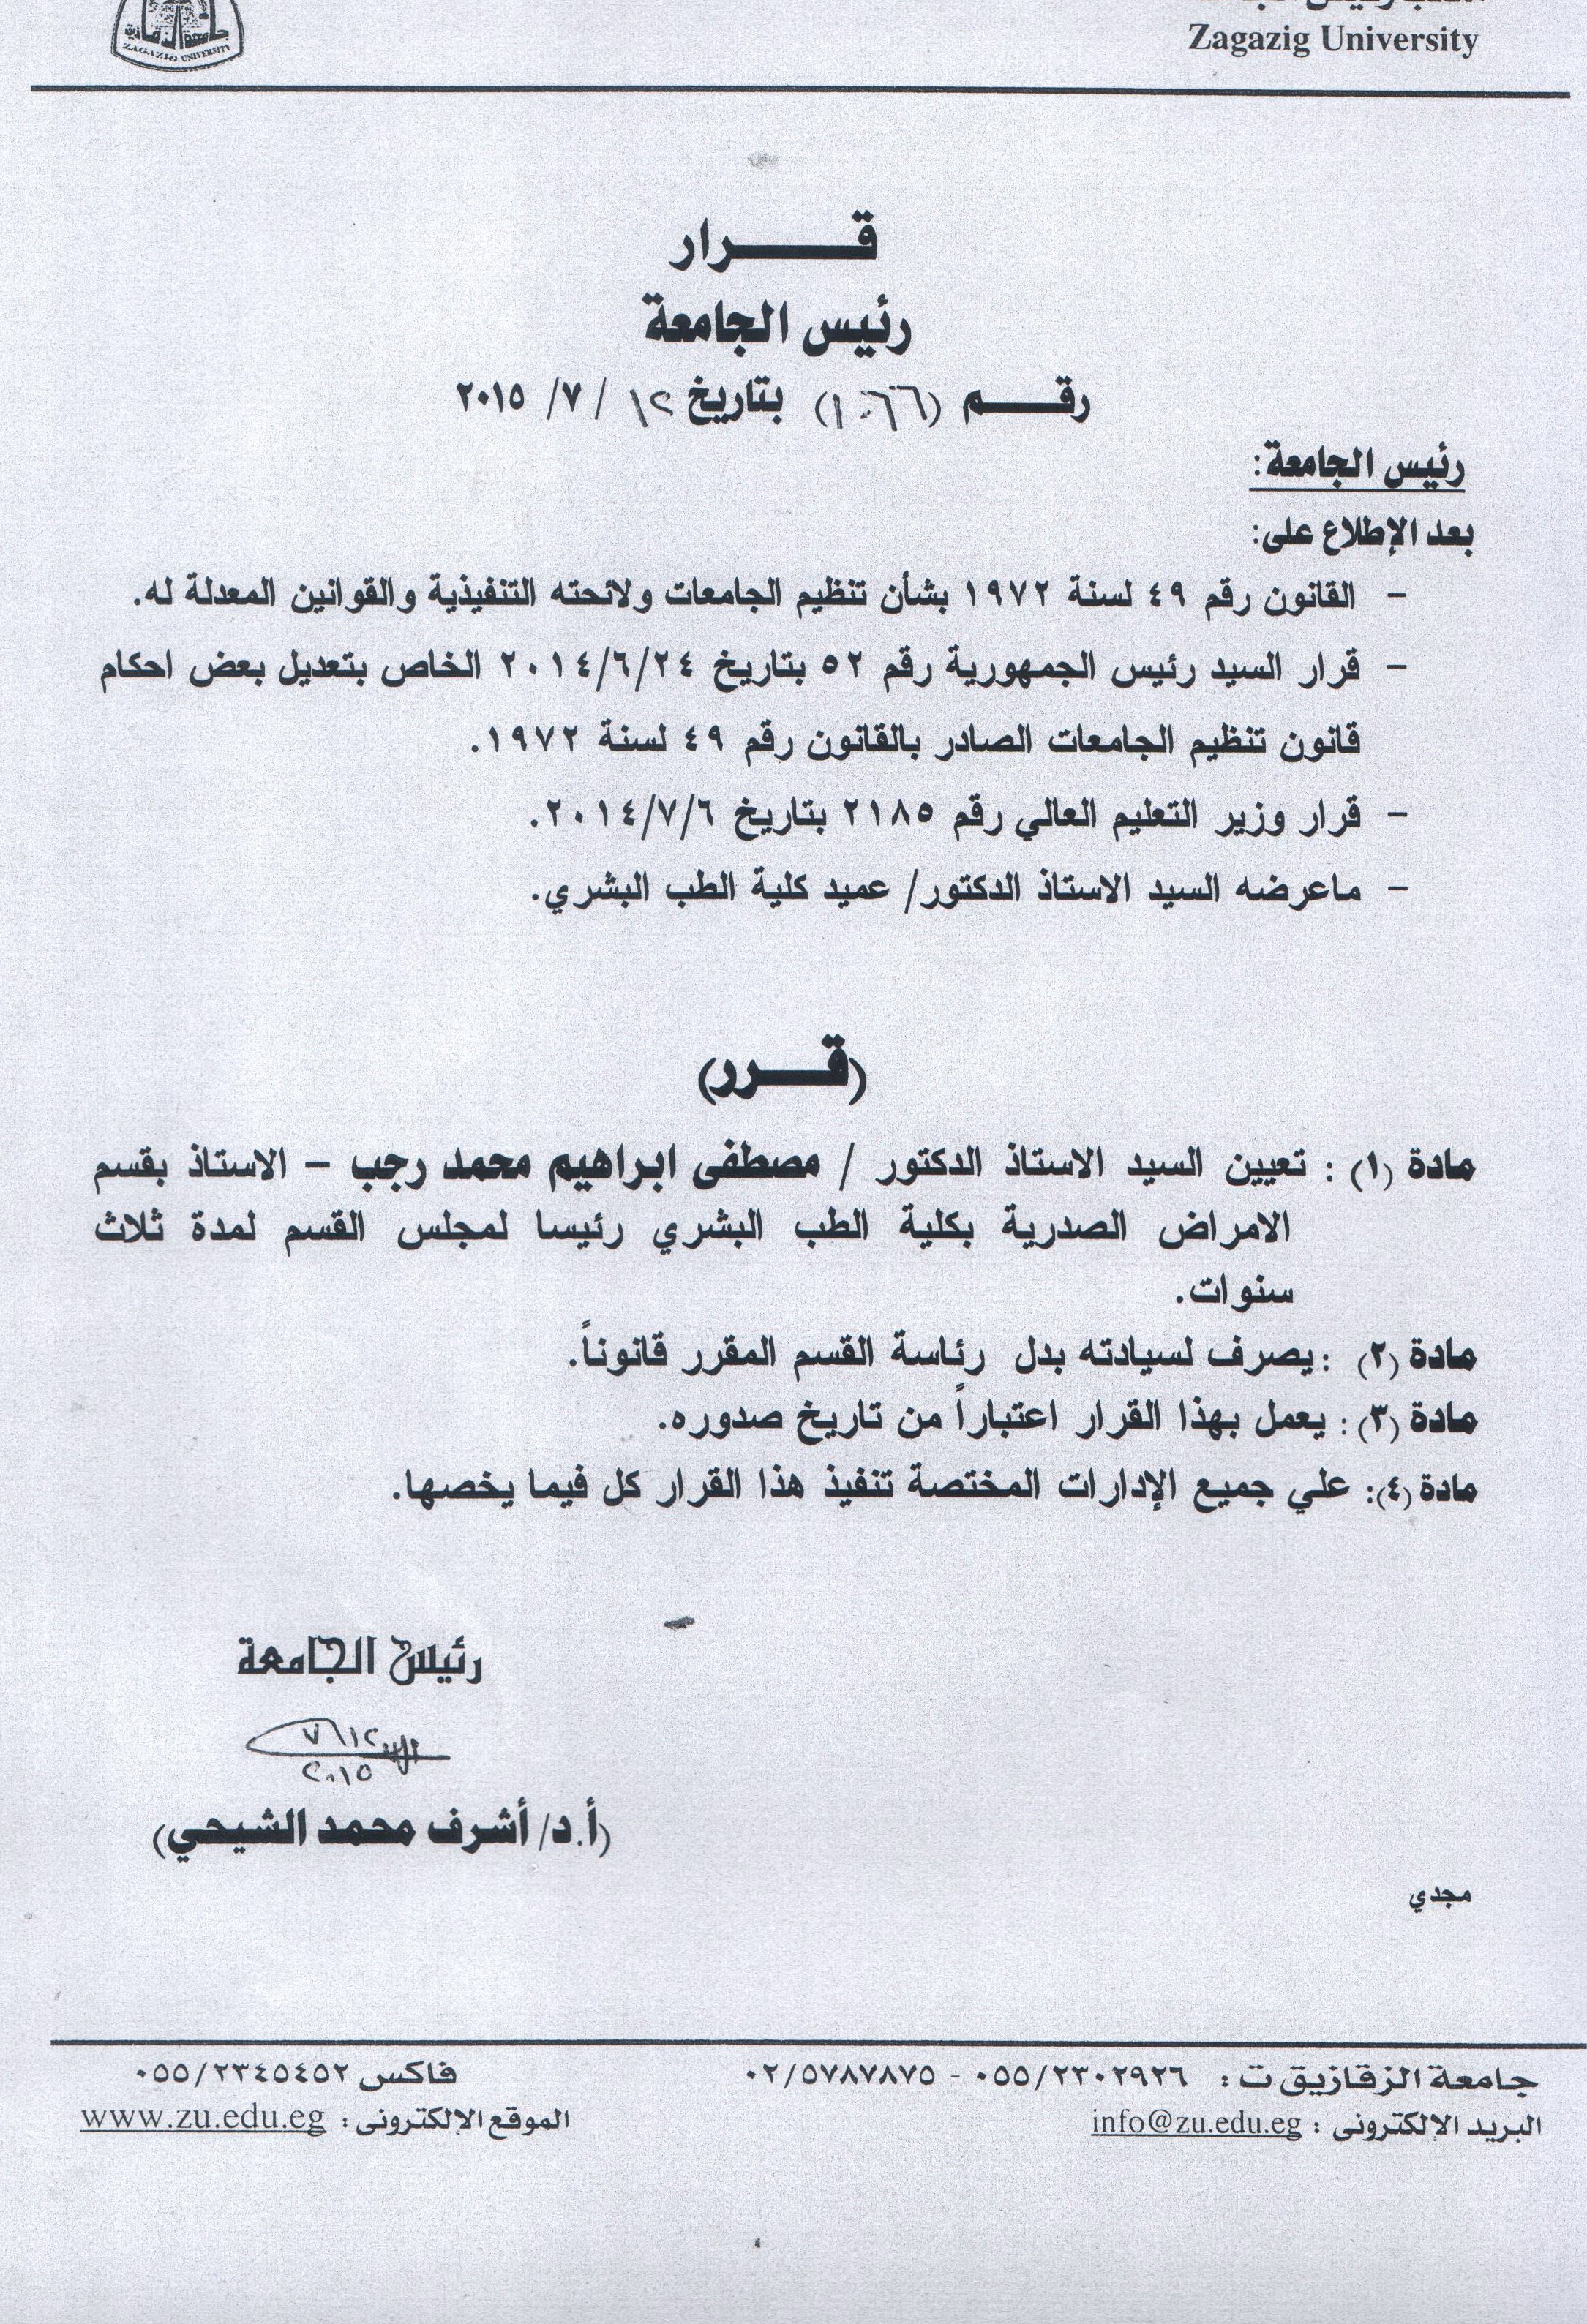 مصطفى رجب رئيسا لمجلس قسم الأمراض الصدرية